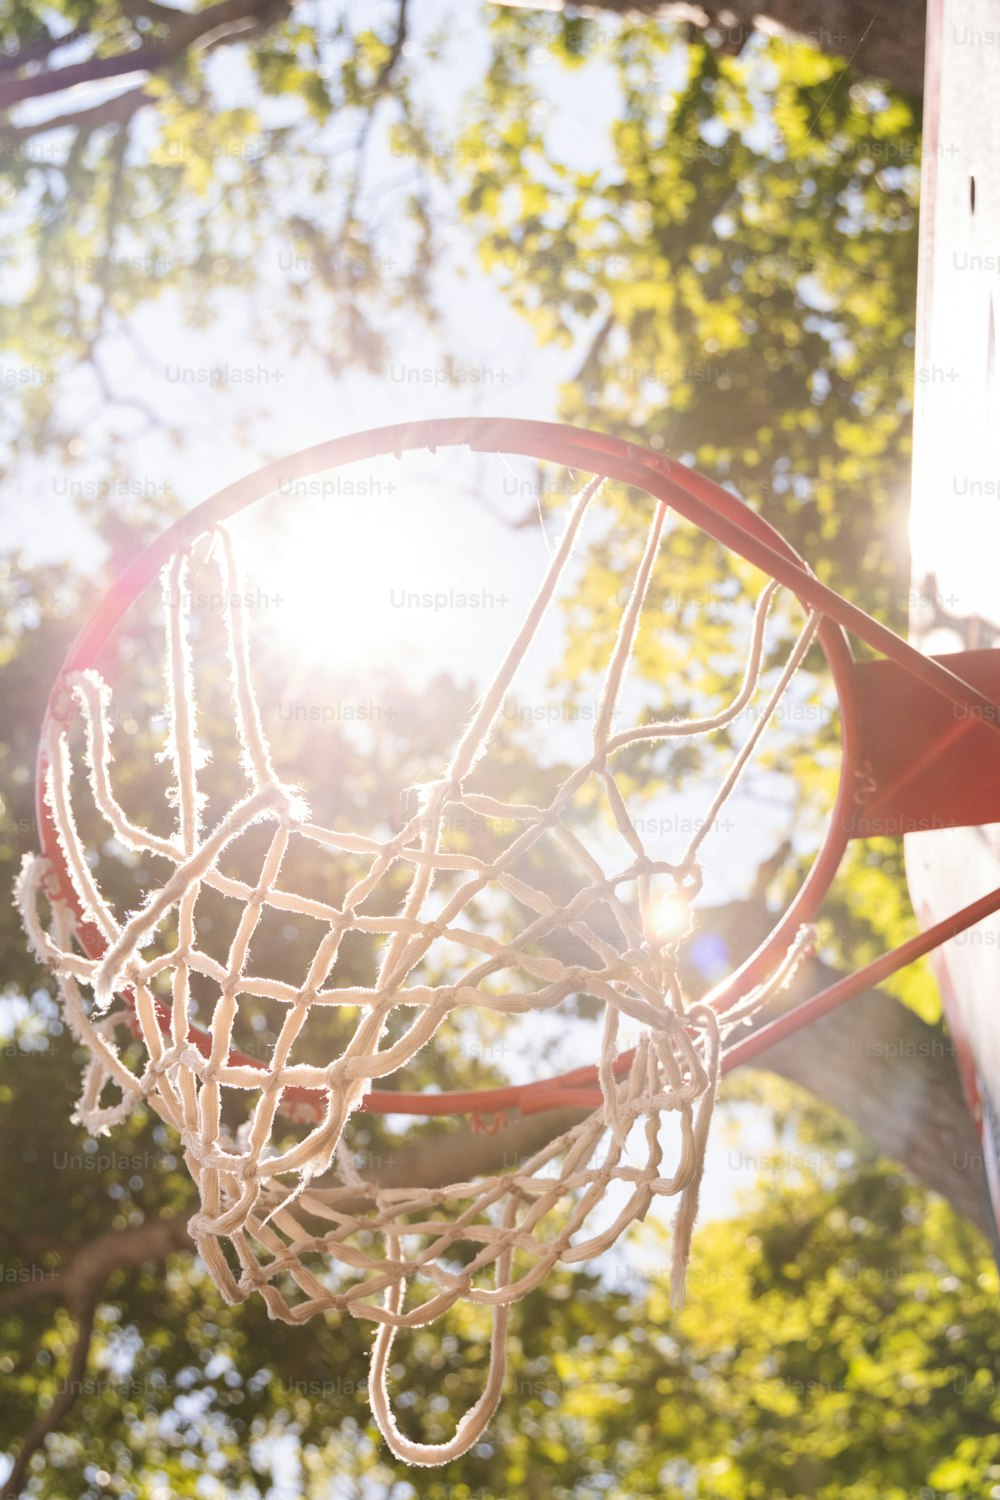 Un primer plano de una pelota de baloncesto pasando por un aro